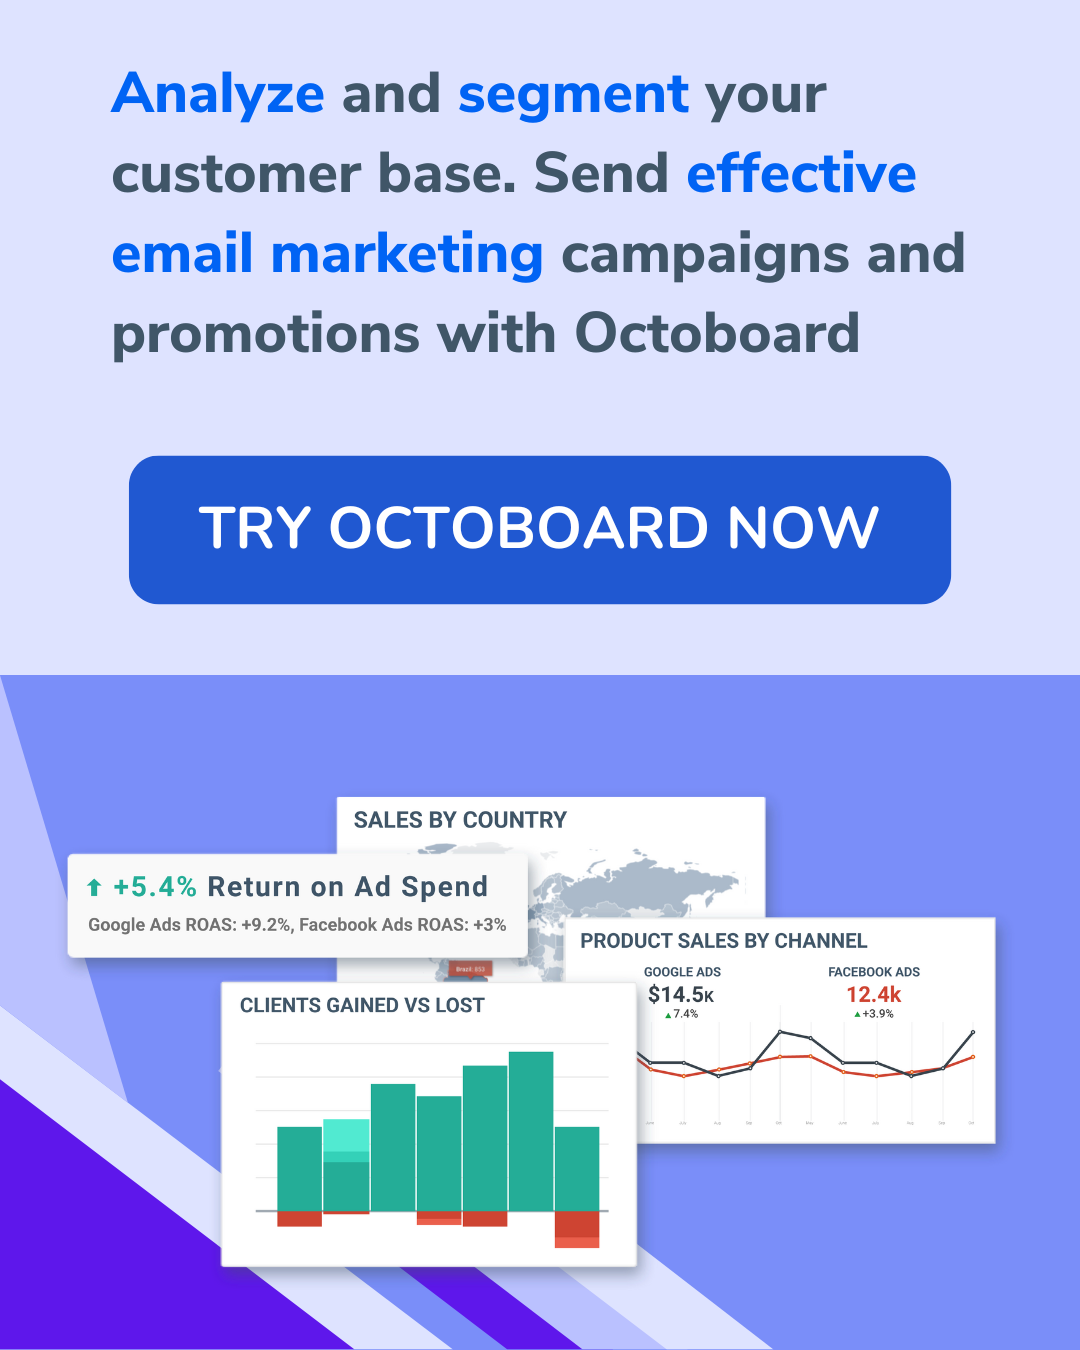 Analise e segmente sua base de clientes. Envie campanhas de marketing por e-mail e promoções eficazes com o Octoboard.